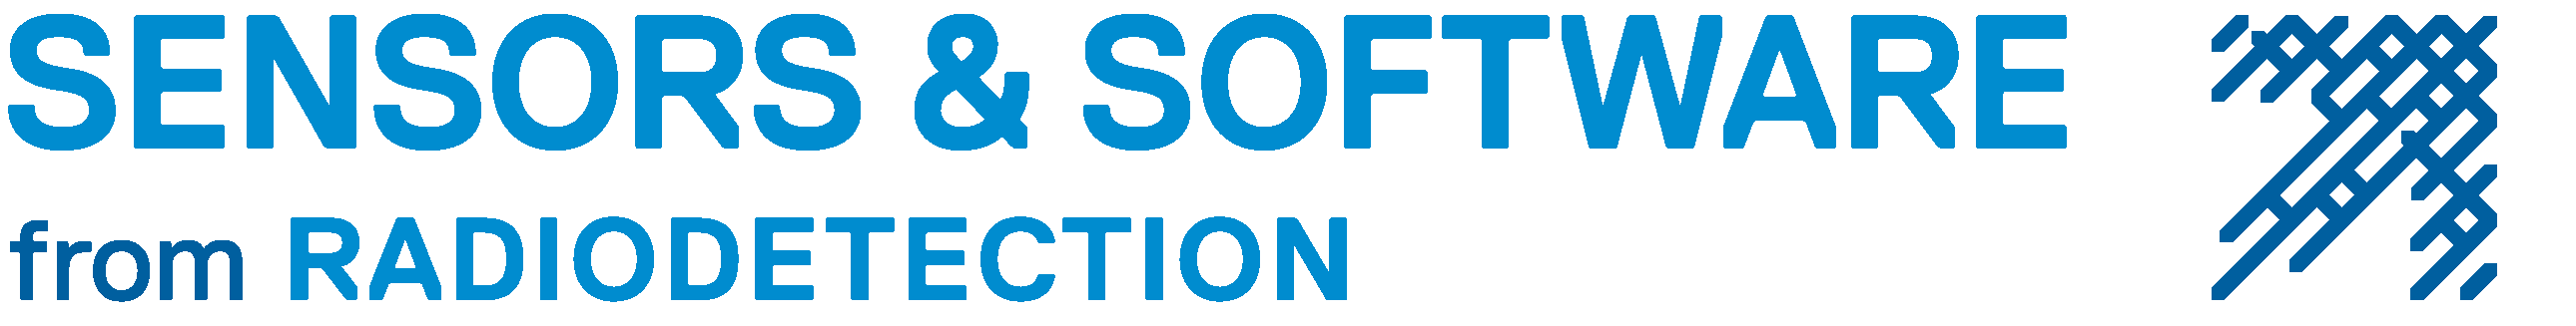 Logotipo da Sensoft